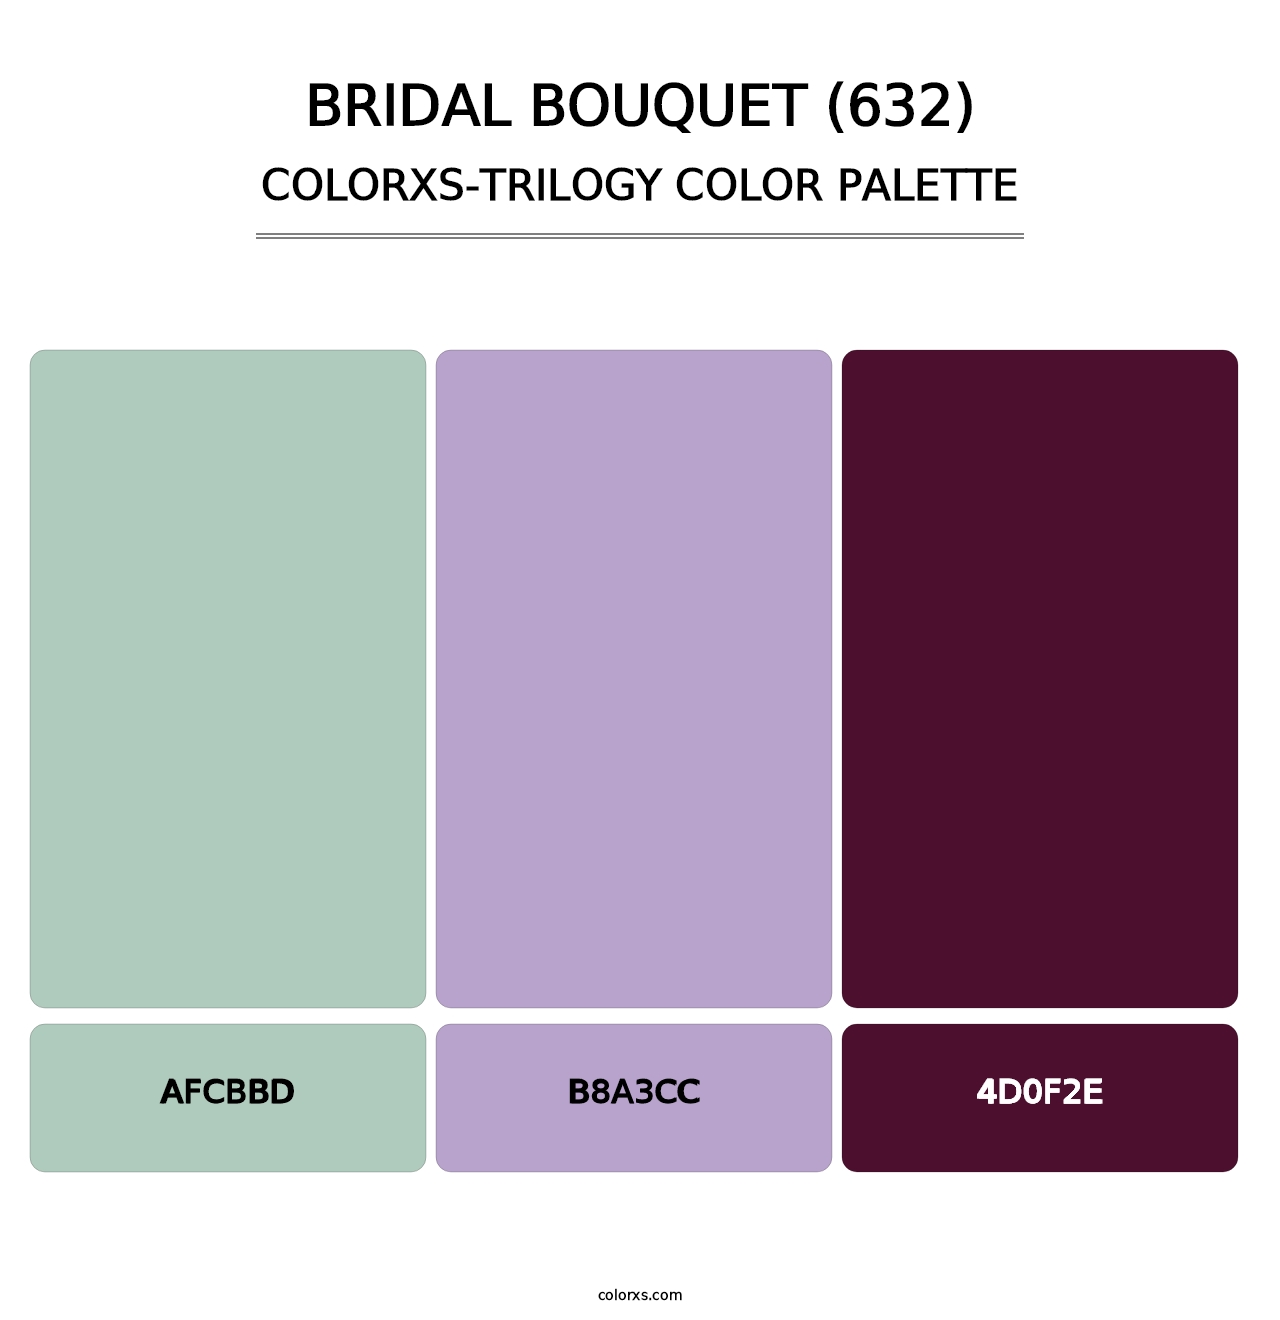 Bridal Bouquet (632) - Colorxs Trilogy Palette